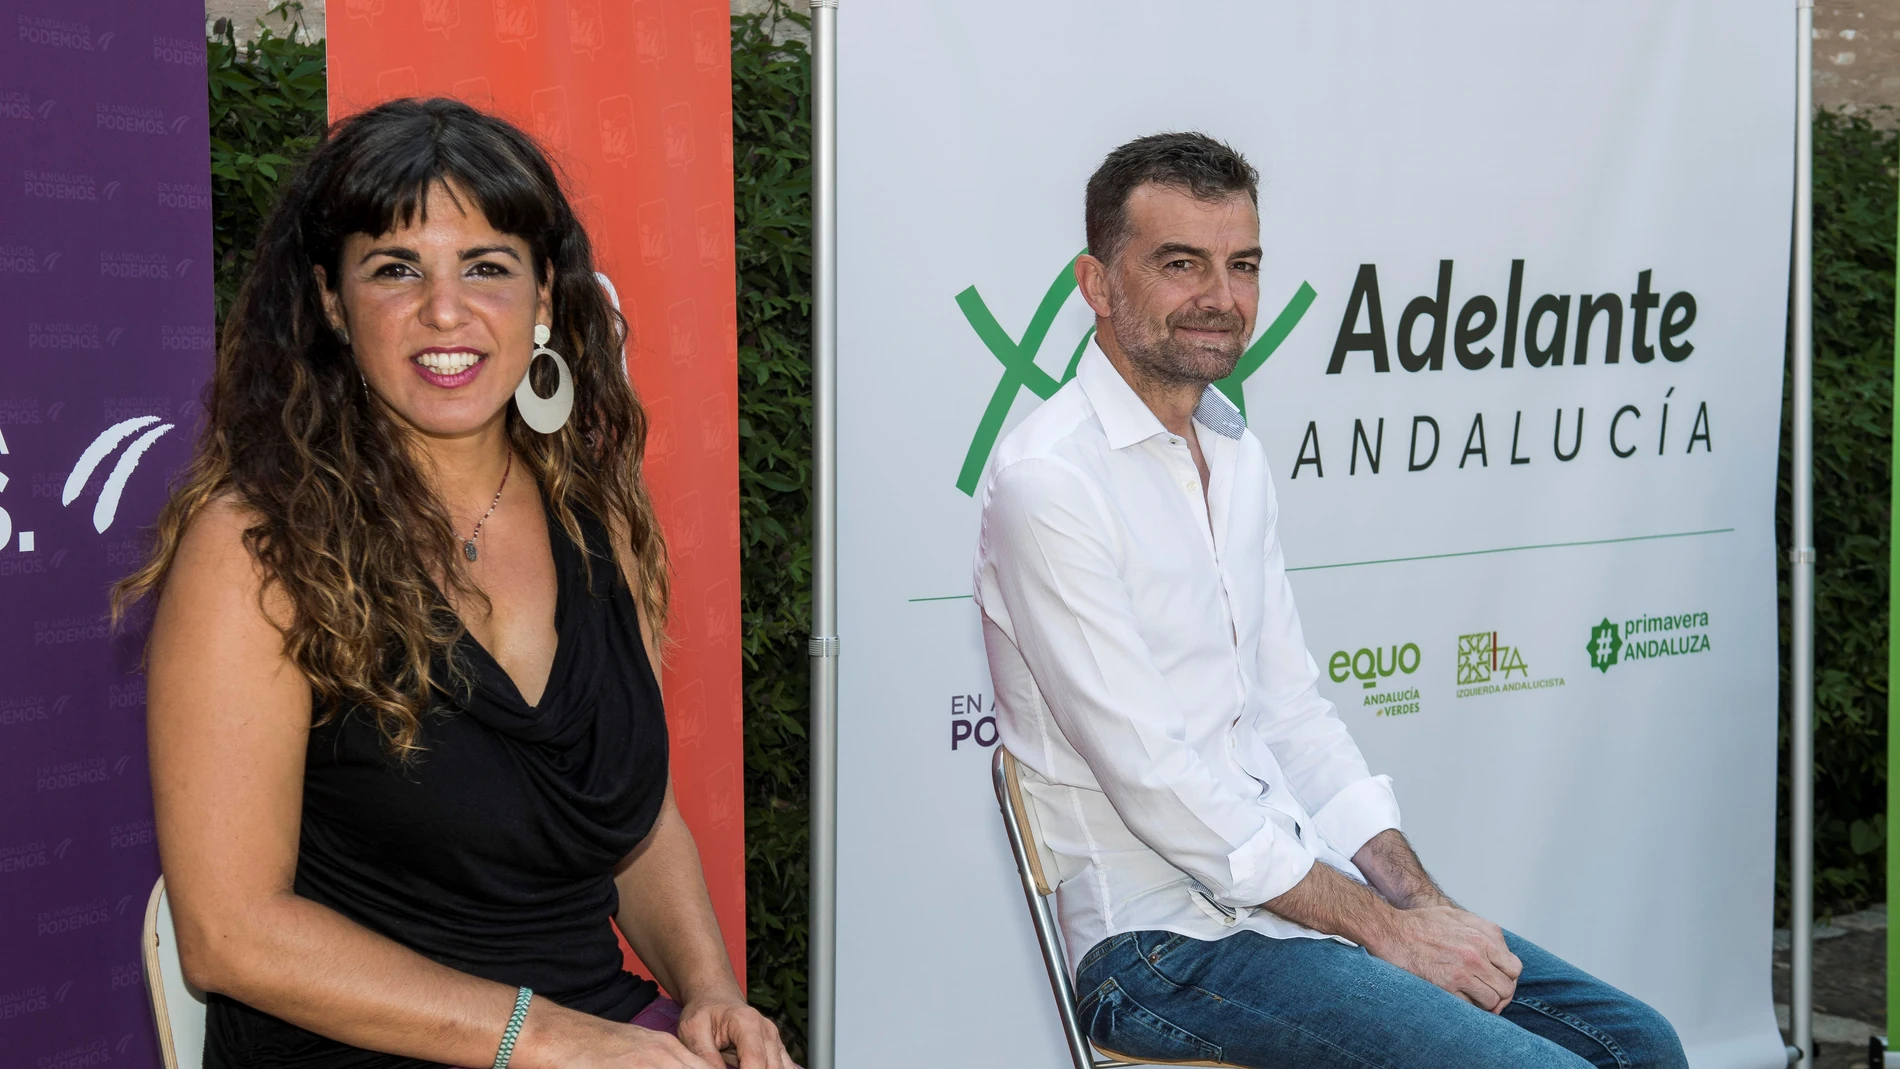 Teresa Rodríguez, coordinadora general de Podemos Andalucía y Antonio Maíllo, coordinador general de IU Andalucía